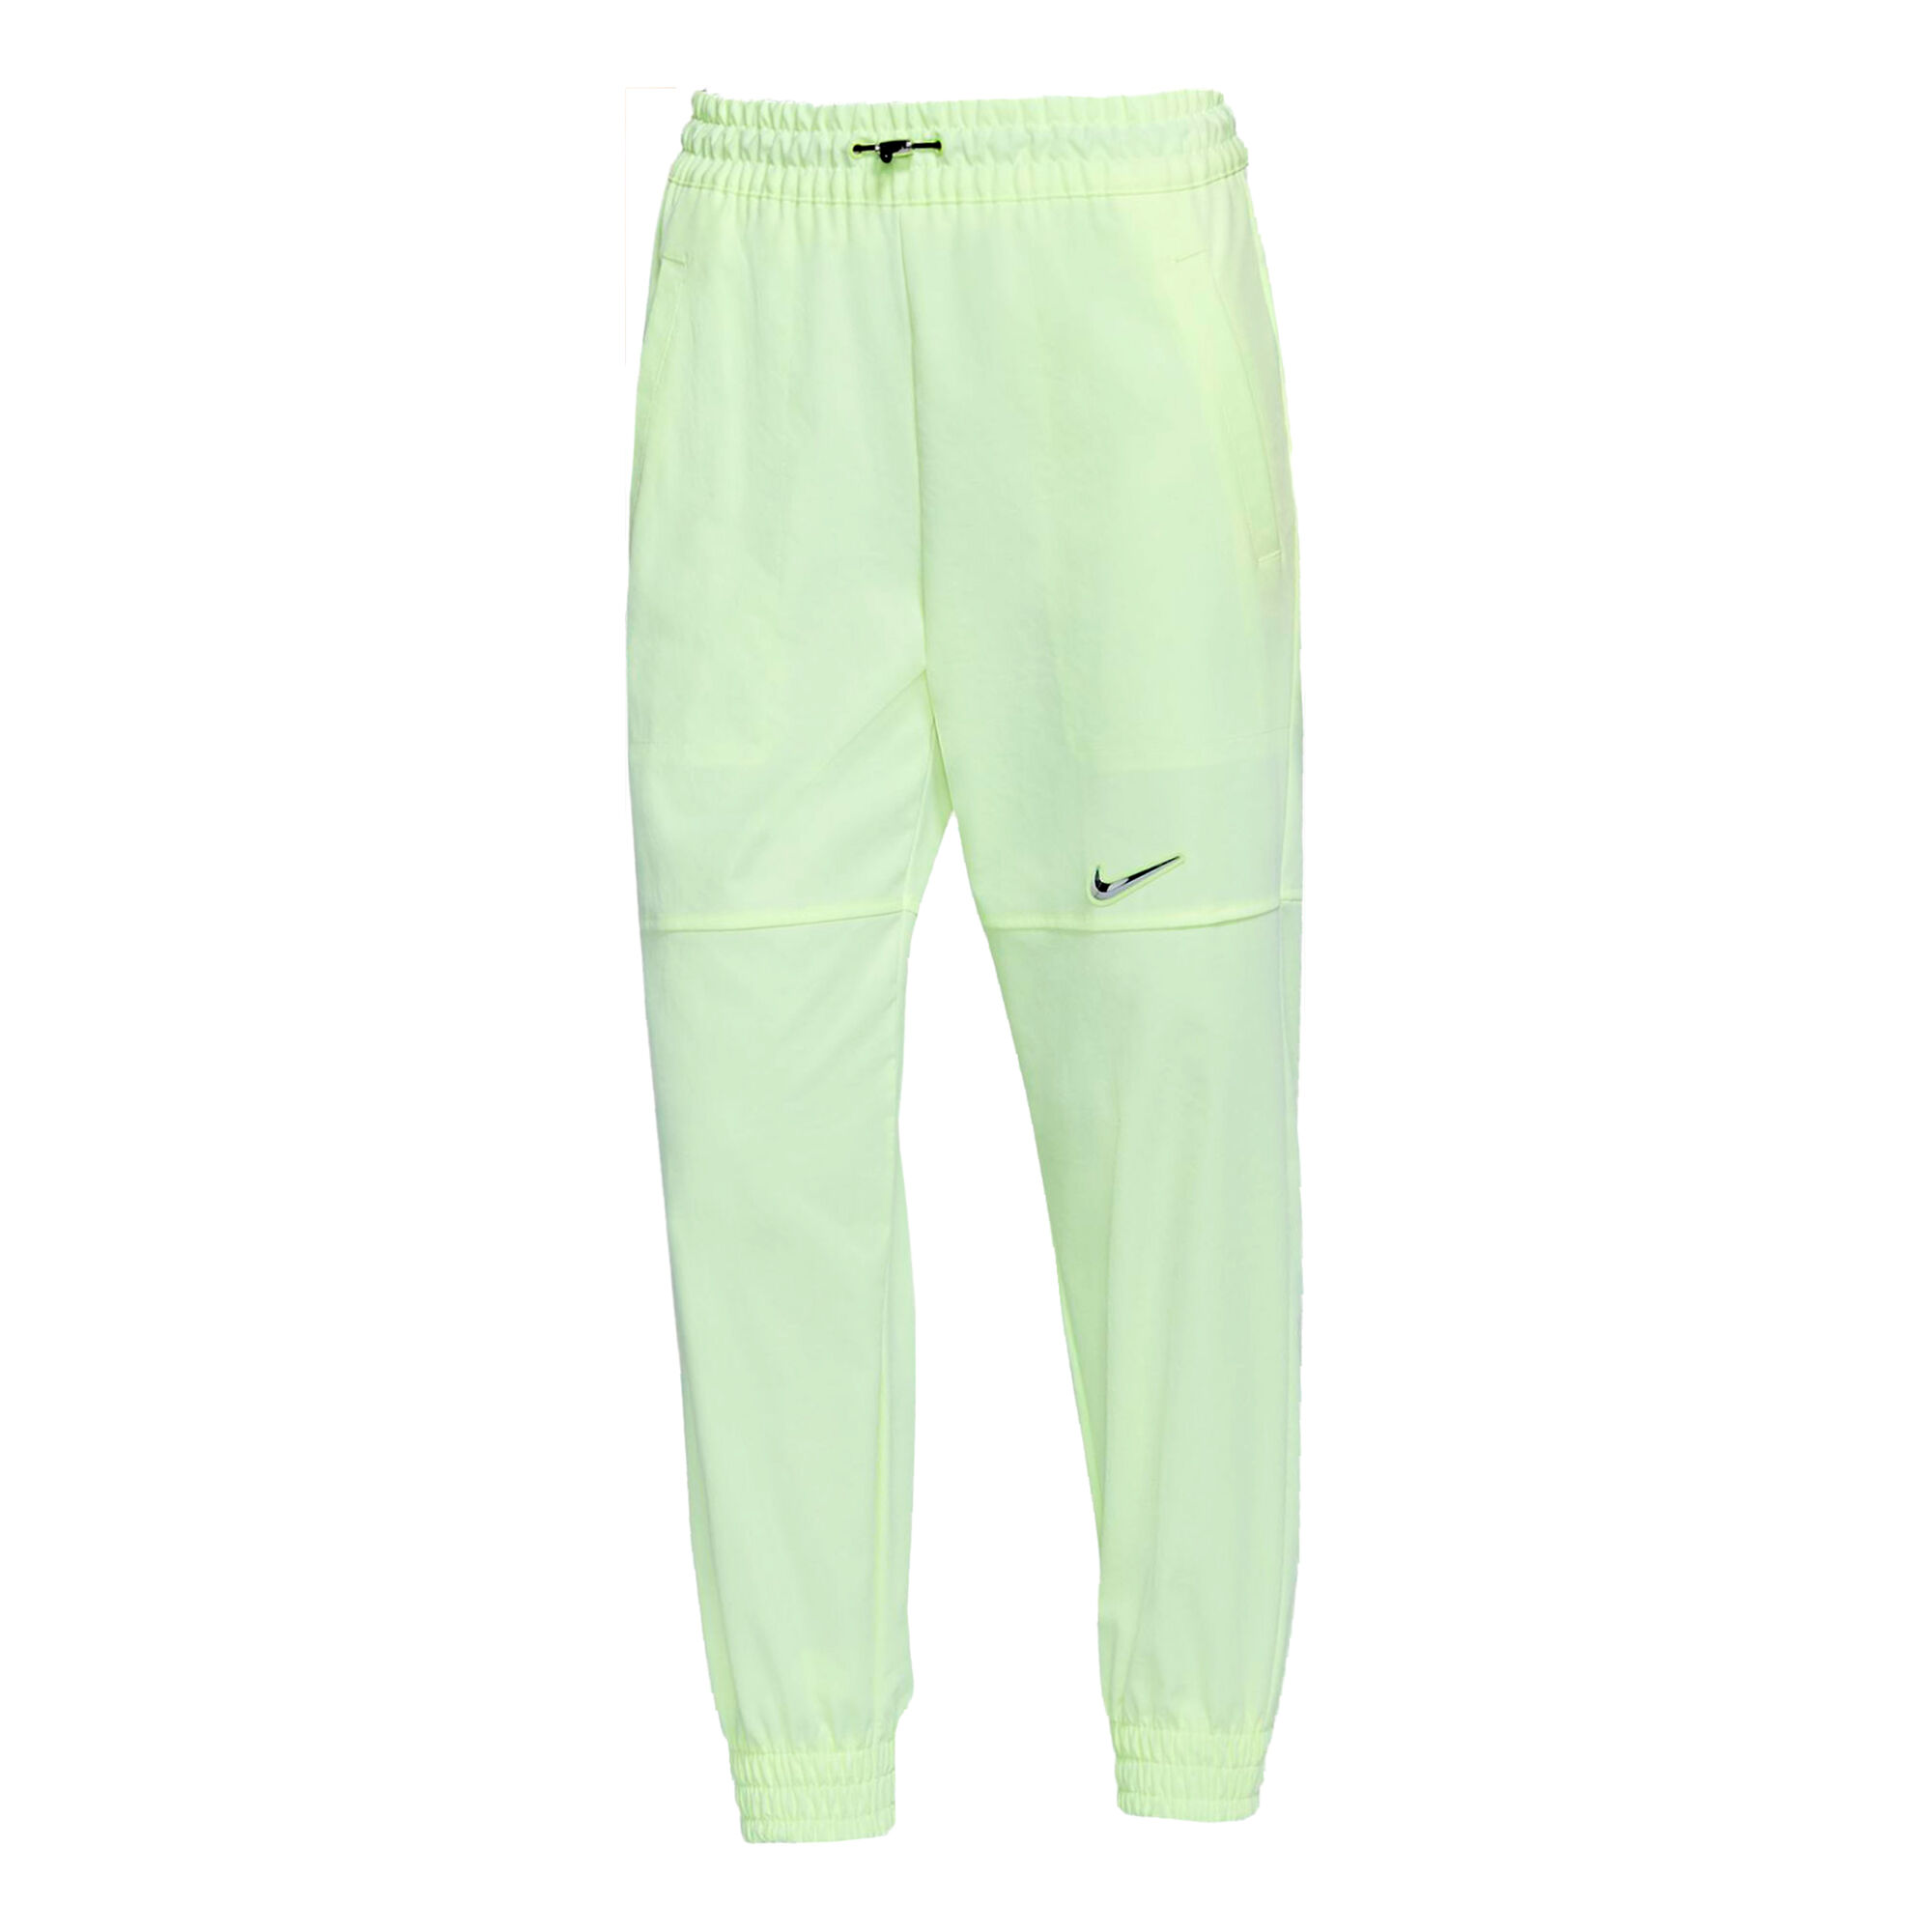 Pantalon de jogging Femme - Vert clair